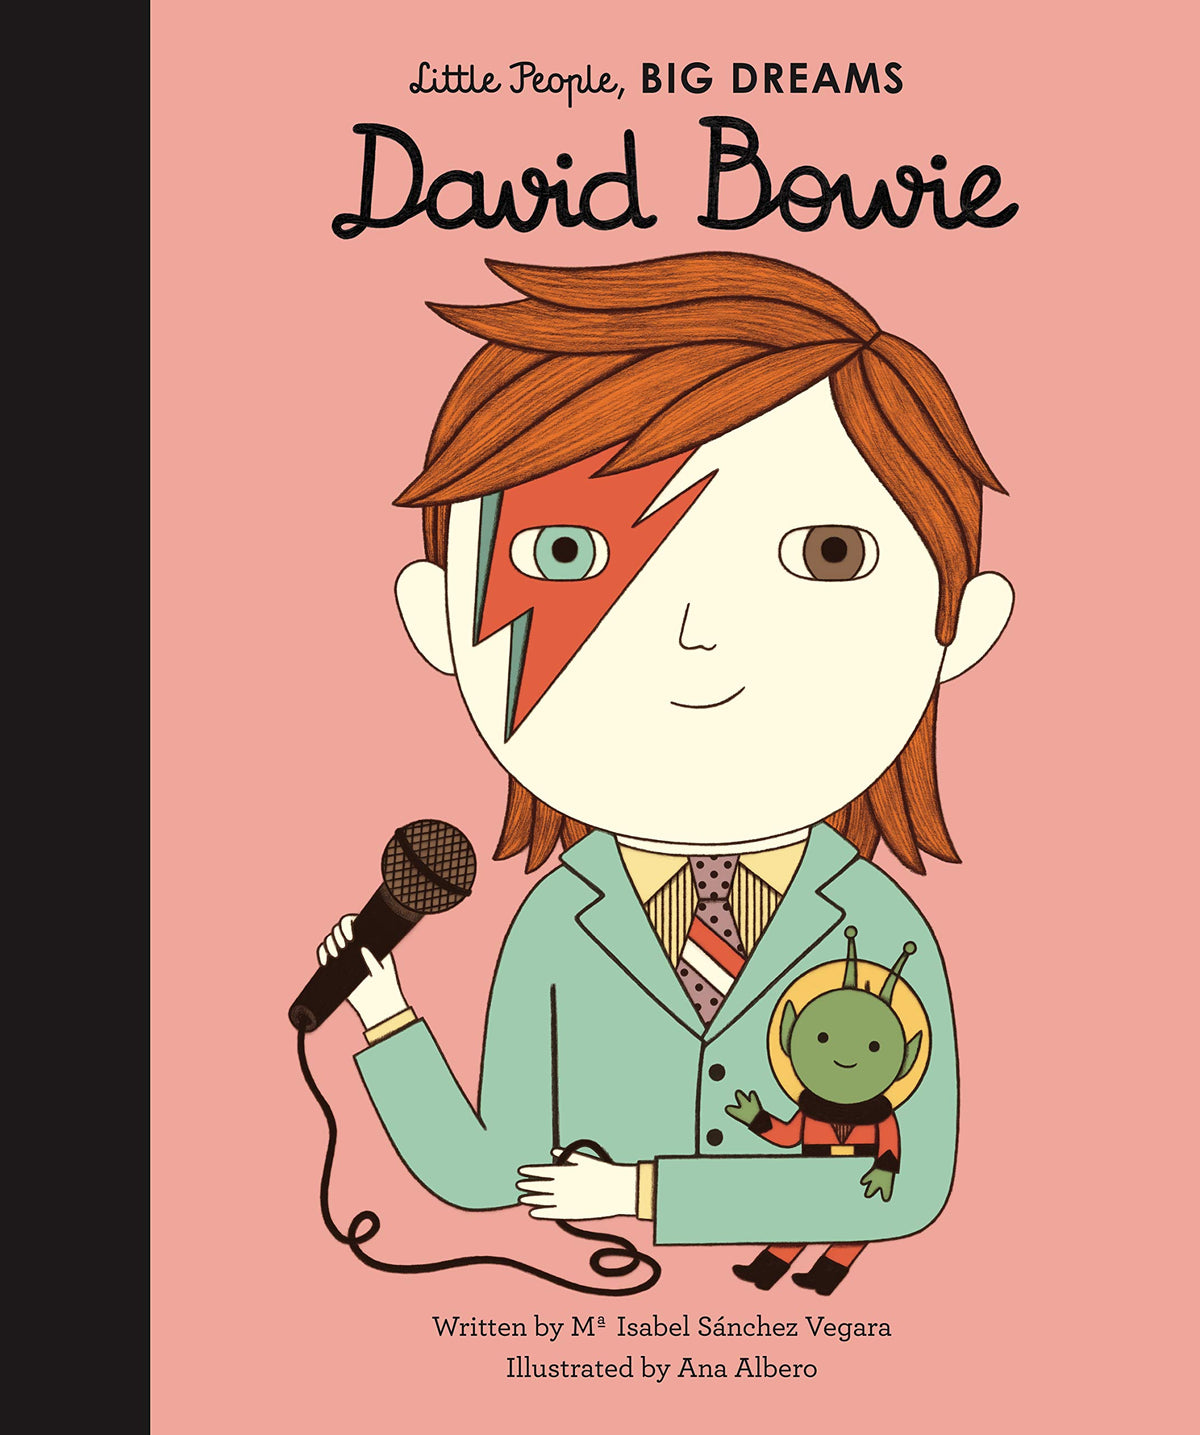 David　Bowie　Road　Little　People,　Big　DREAMS　Telegraph　Shop　Online　—　Entertainment